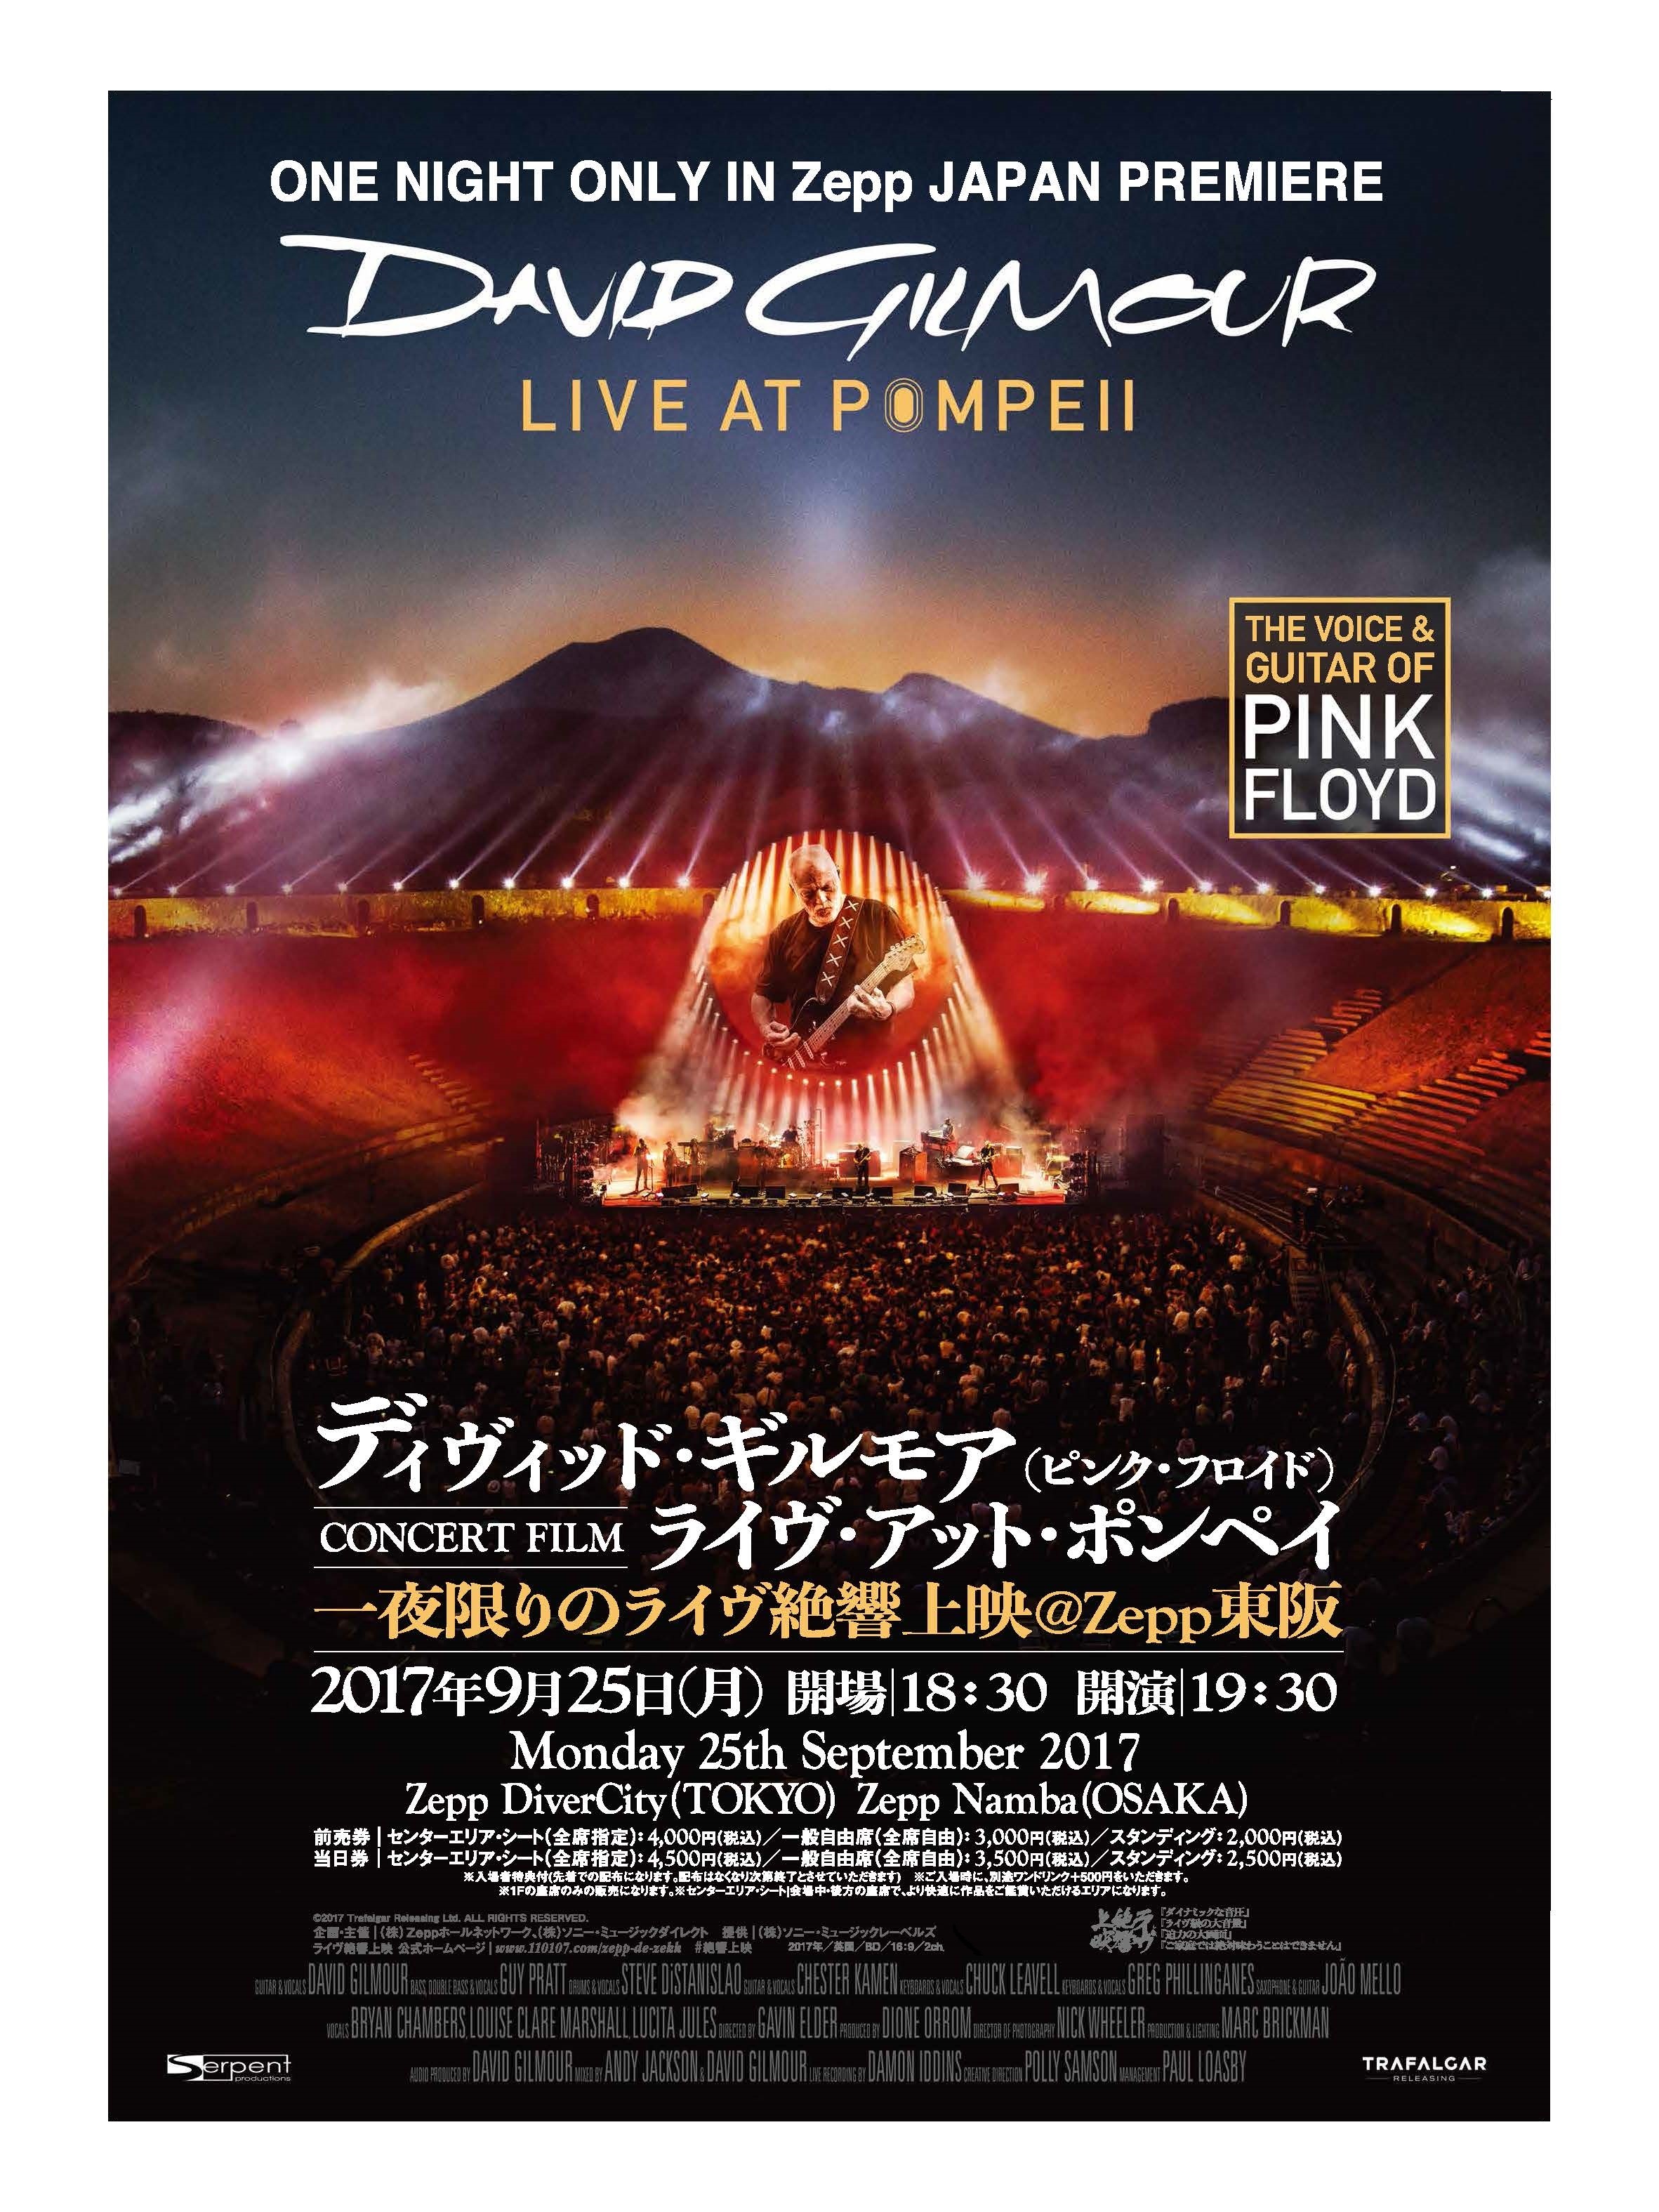 9月25日 月 デヴィッド ギルモア ピンク フロイド の約2 000人限定世界遺産ライヴを疑似体験 東京と大阪のライヴハウスzeppにて大音量上映 株式会社ソニー ミュージックダイレクトのプレスリリース